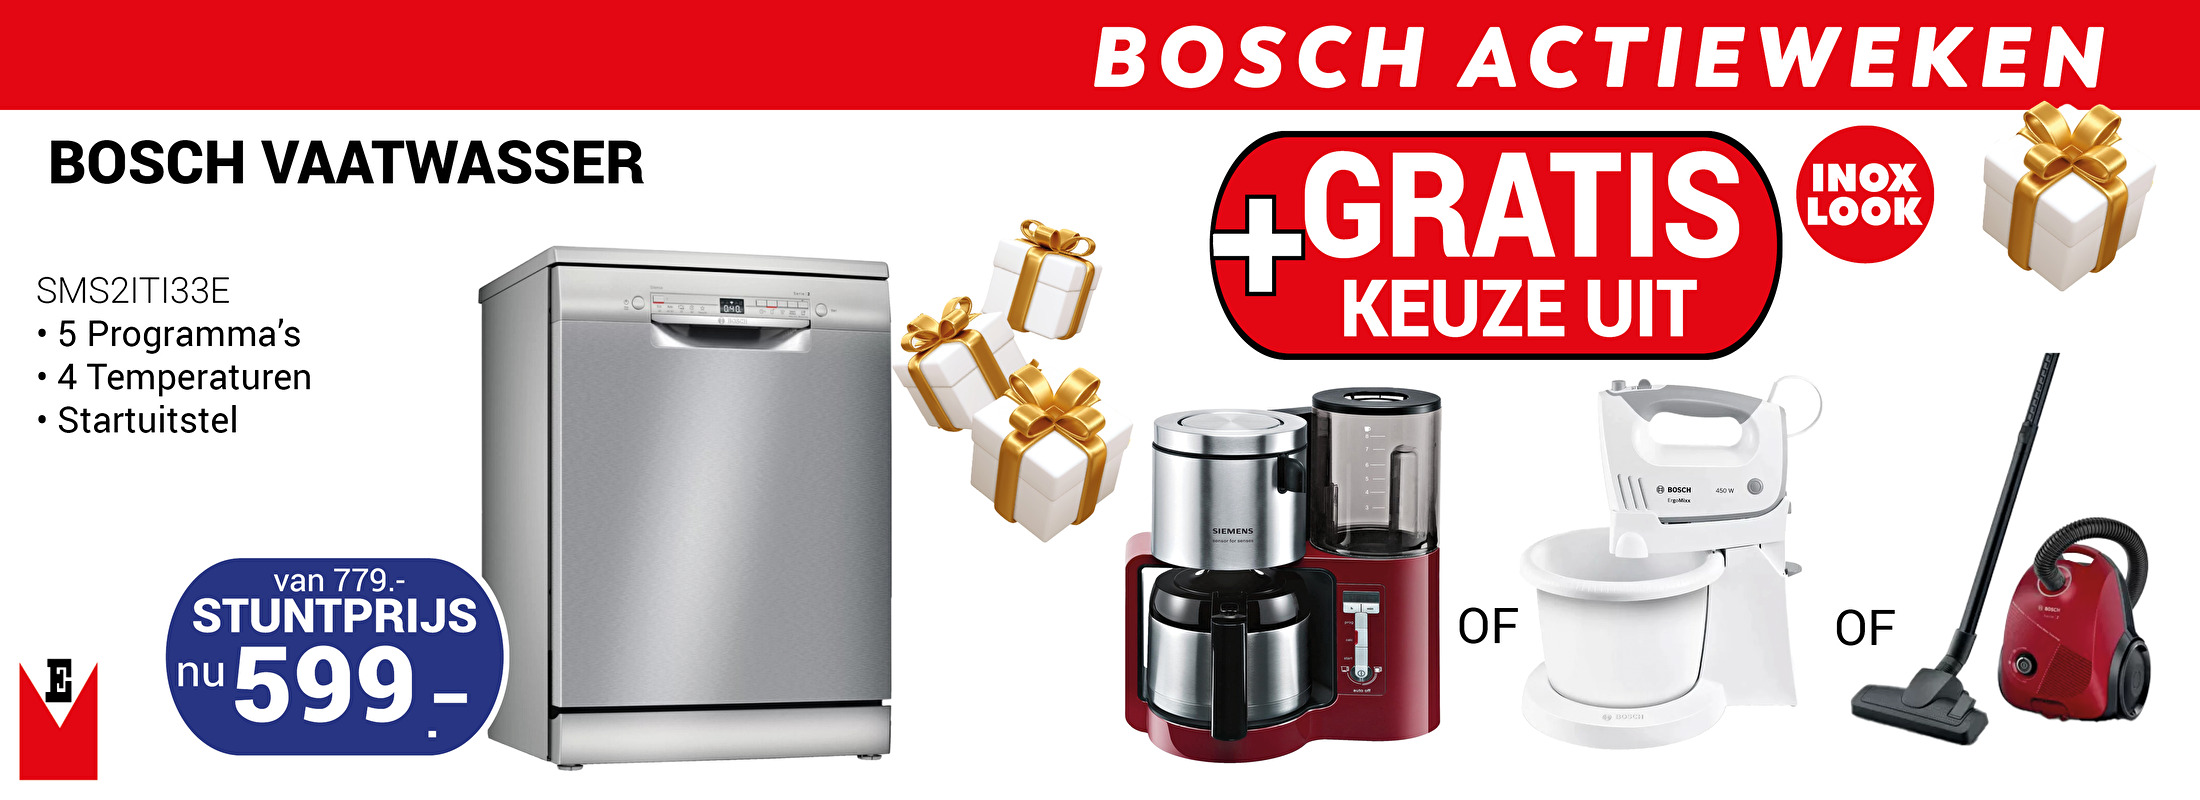 Bosch actieweek